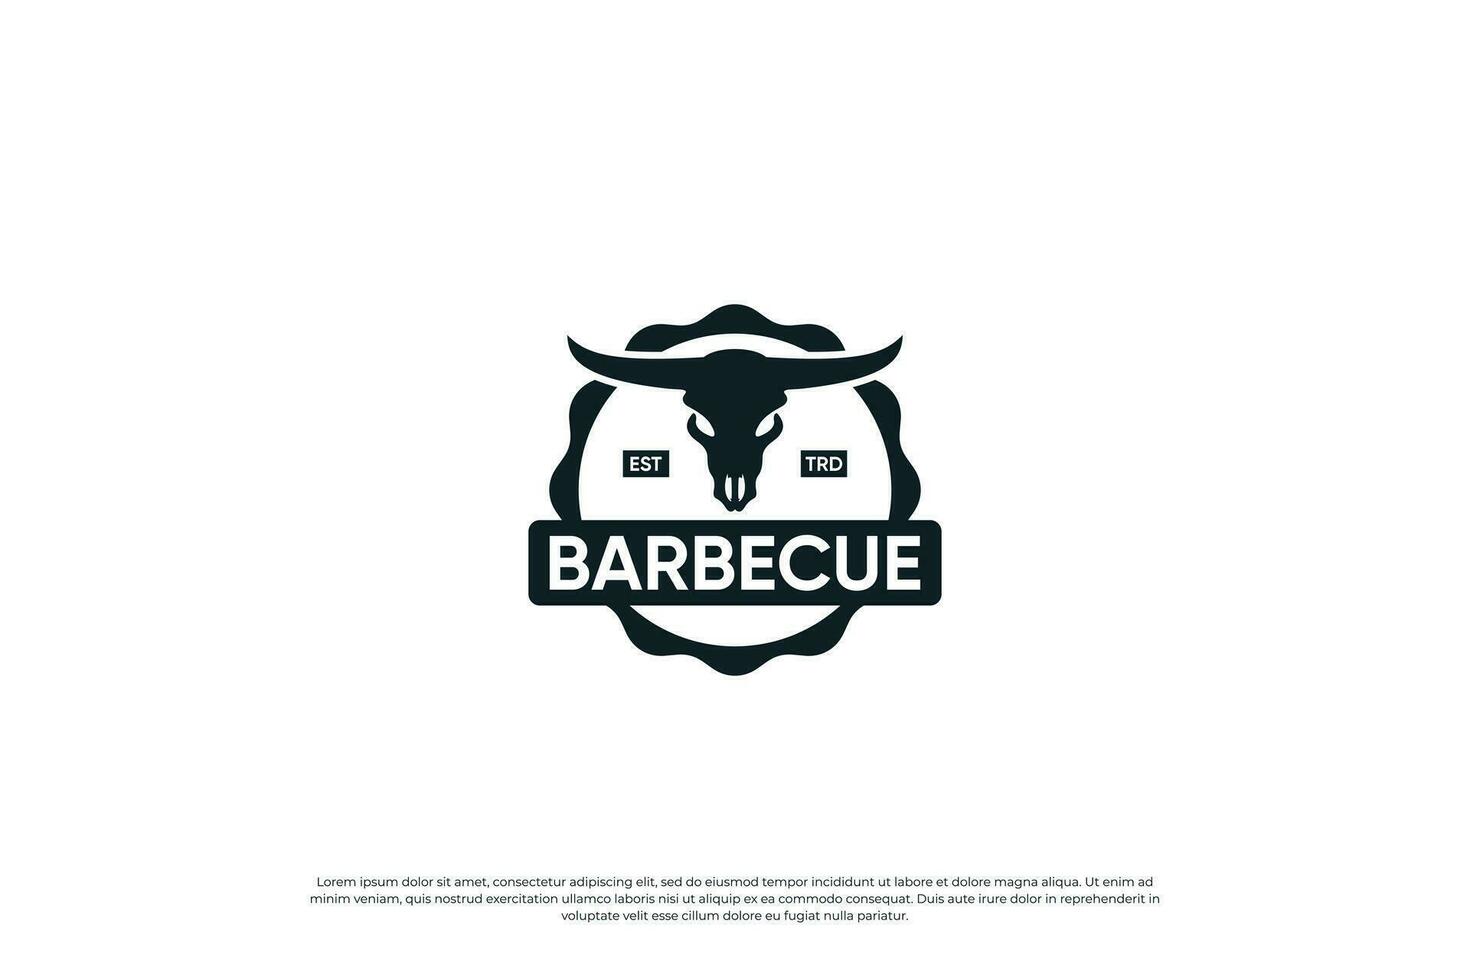 Barbecue, Steak House restaurant logo design. vintage emblem, label, badge template. vector